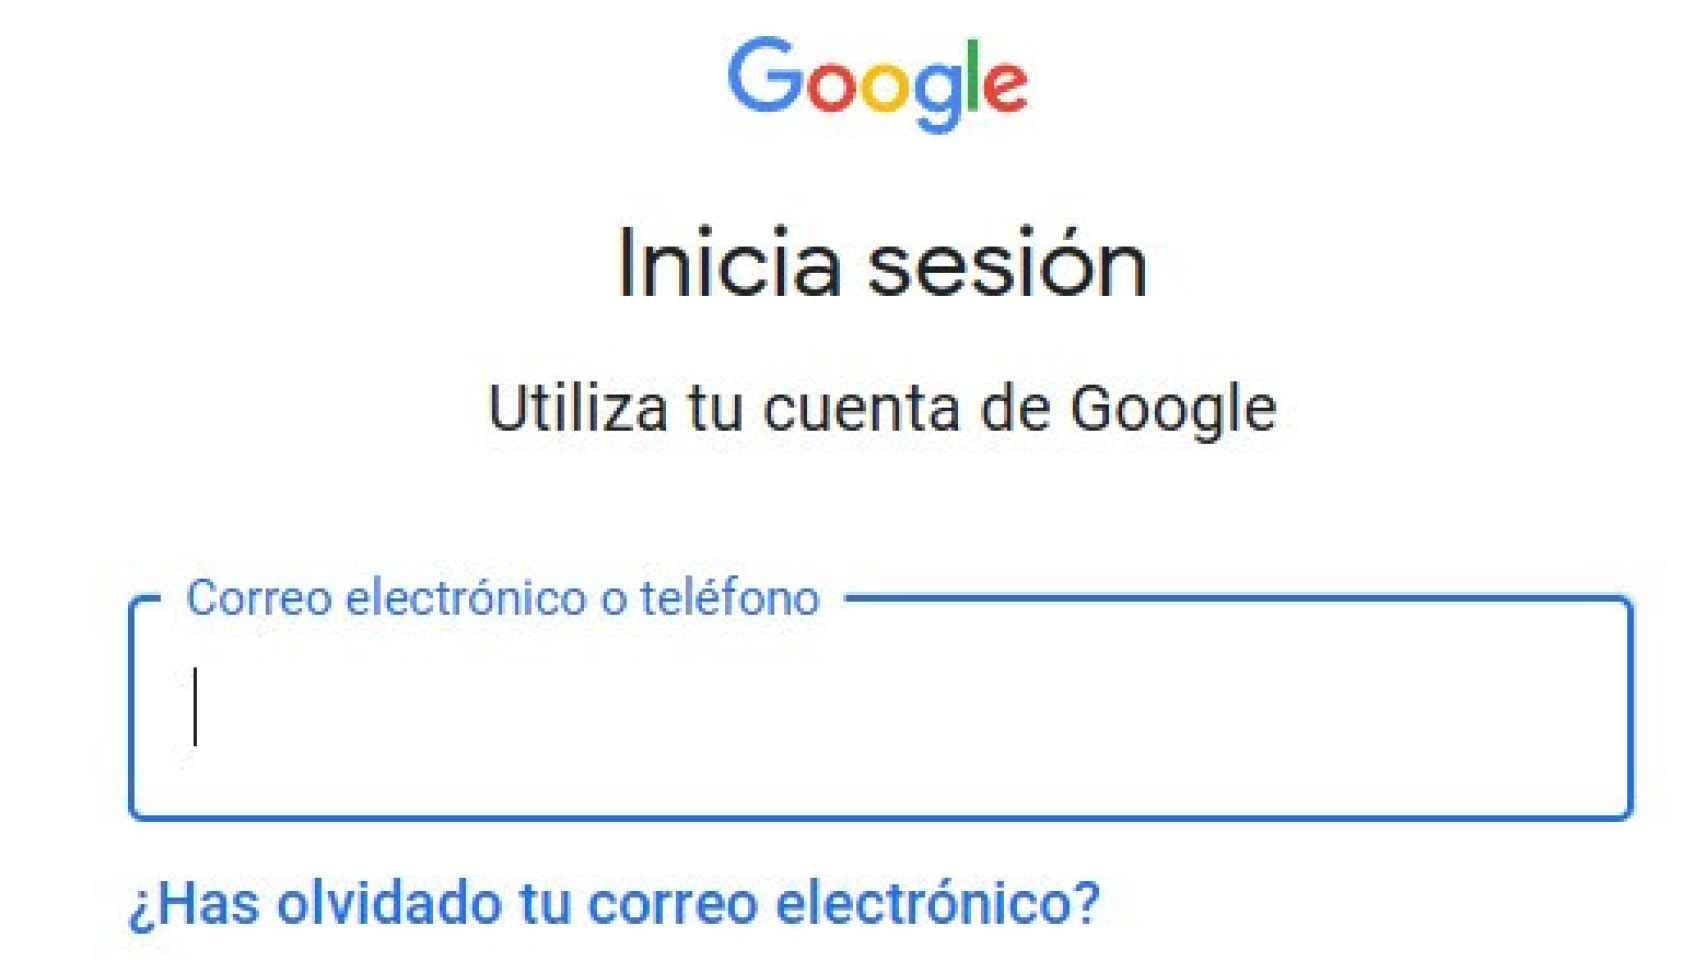 Iniciar sesión en Google